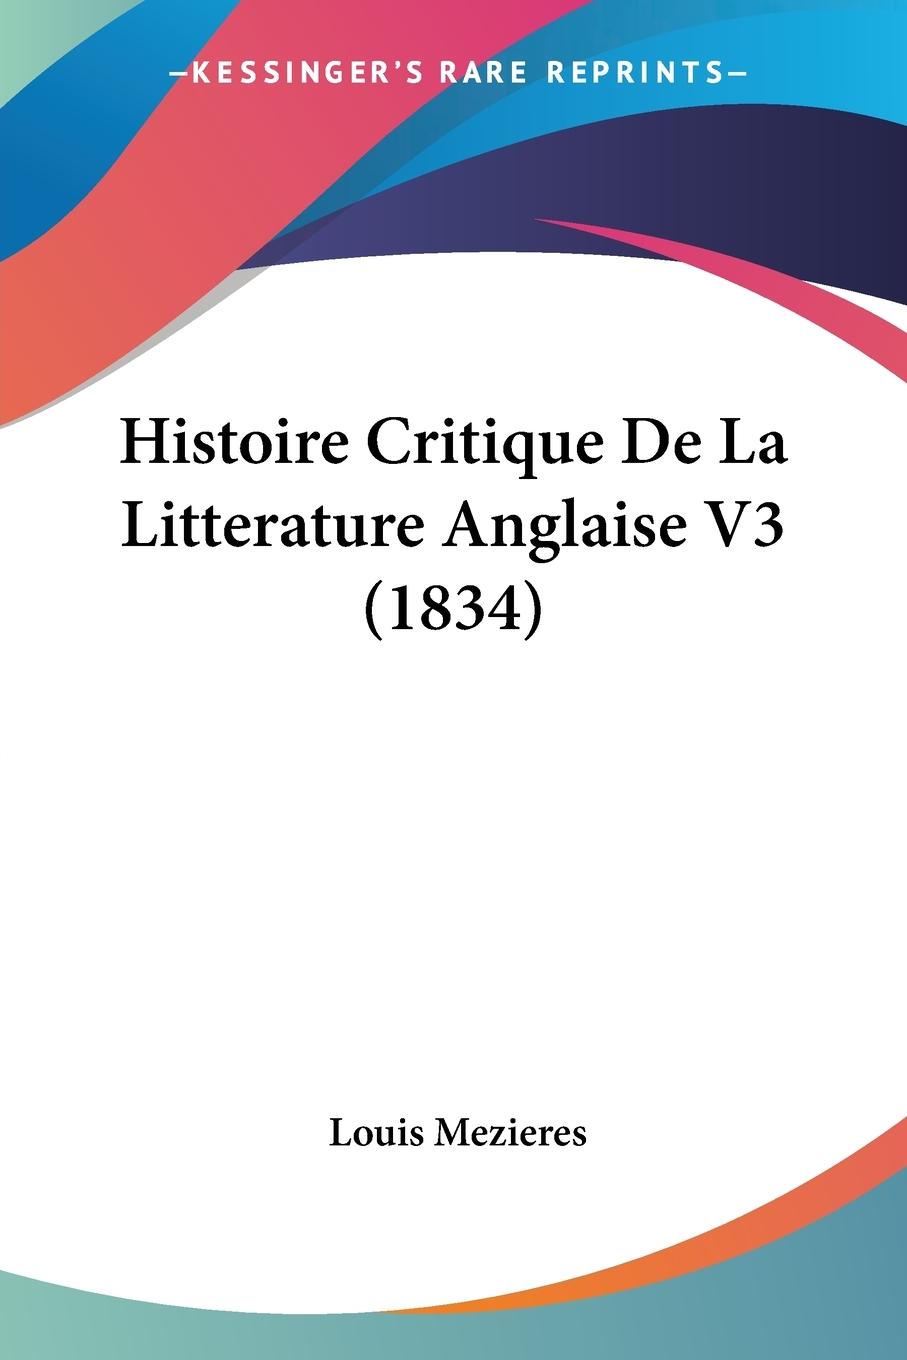 Histoire Critique De La Litterature Anglaise V3 (1834) - Mezieres, Louis